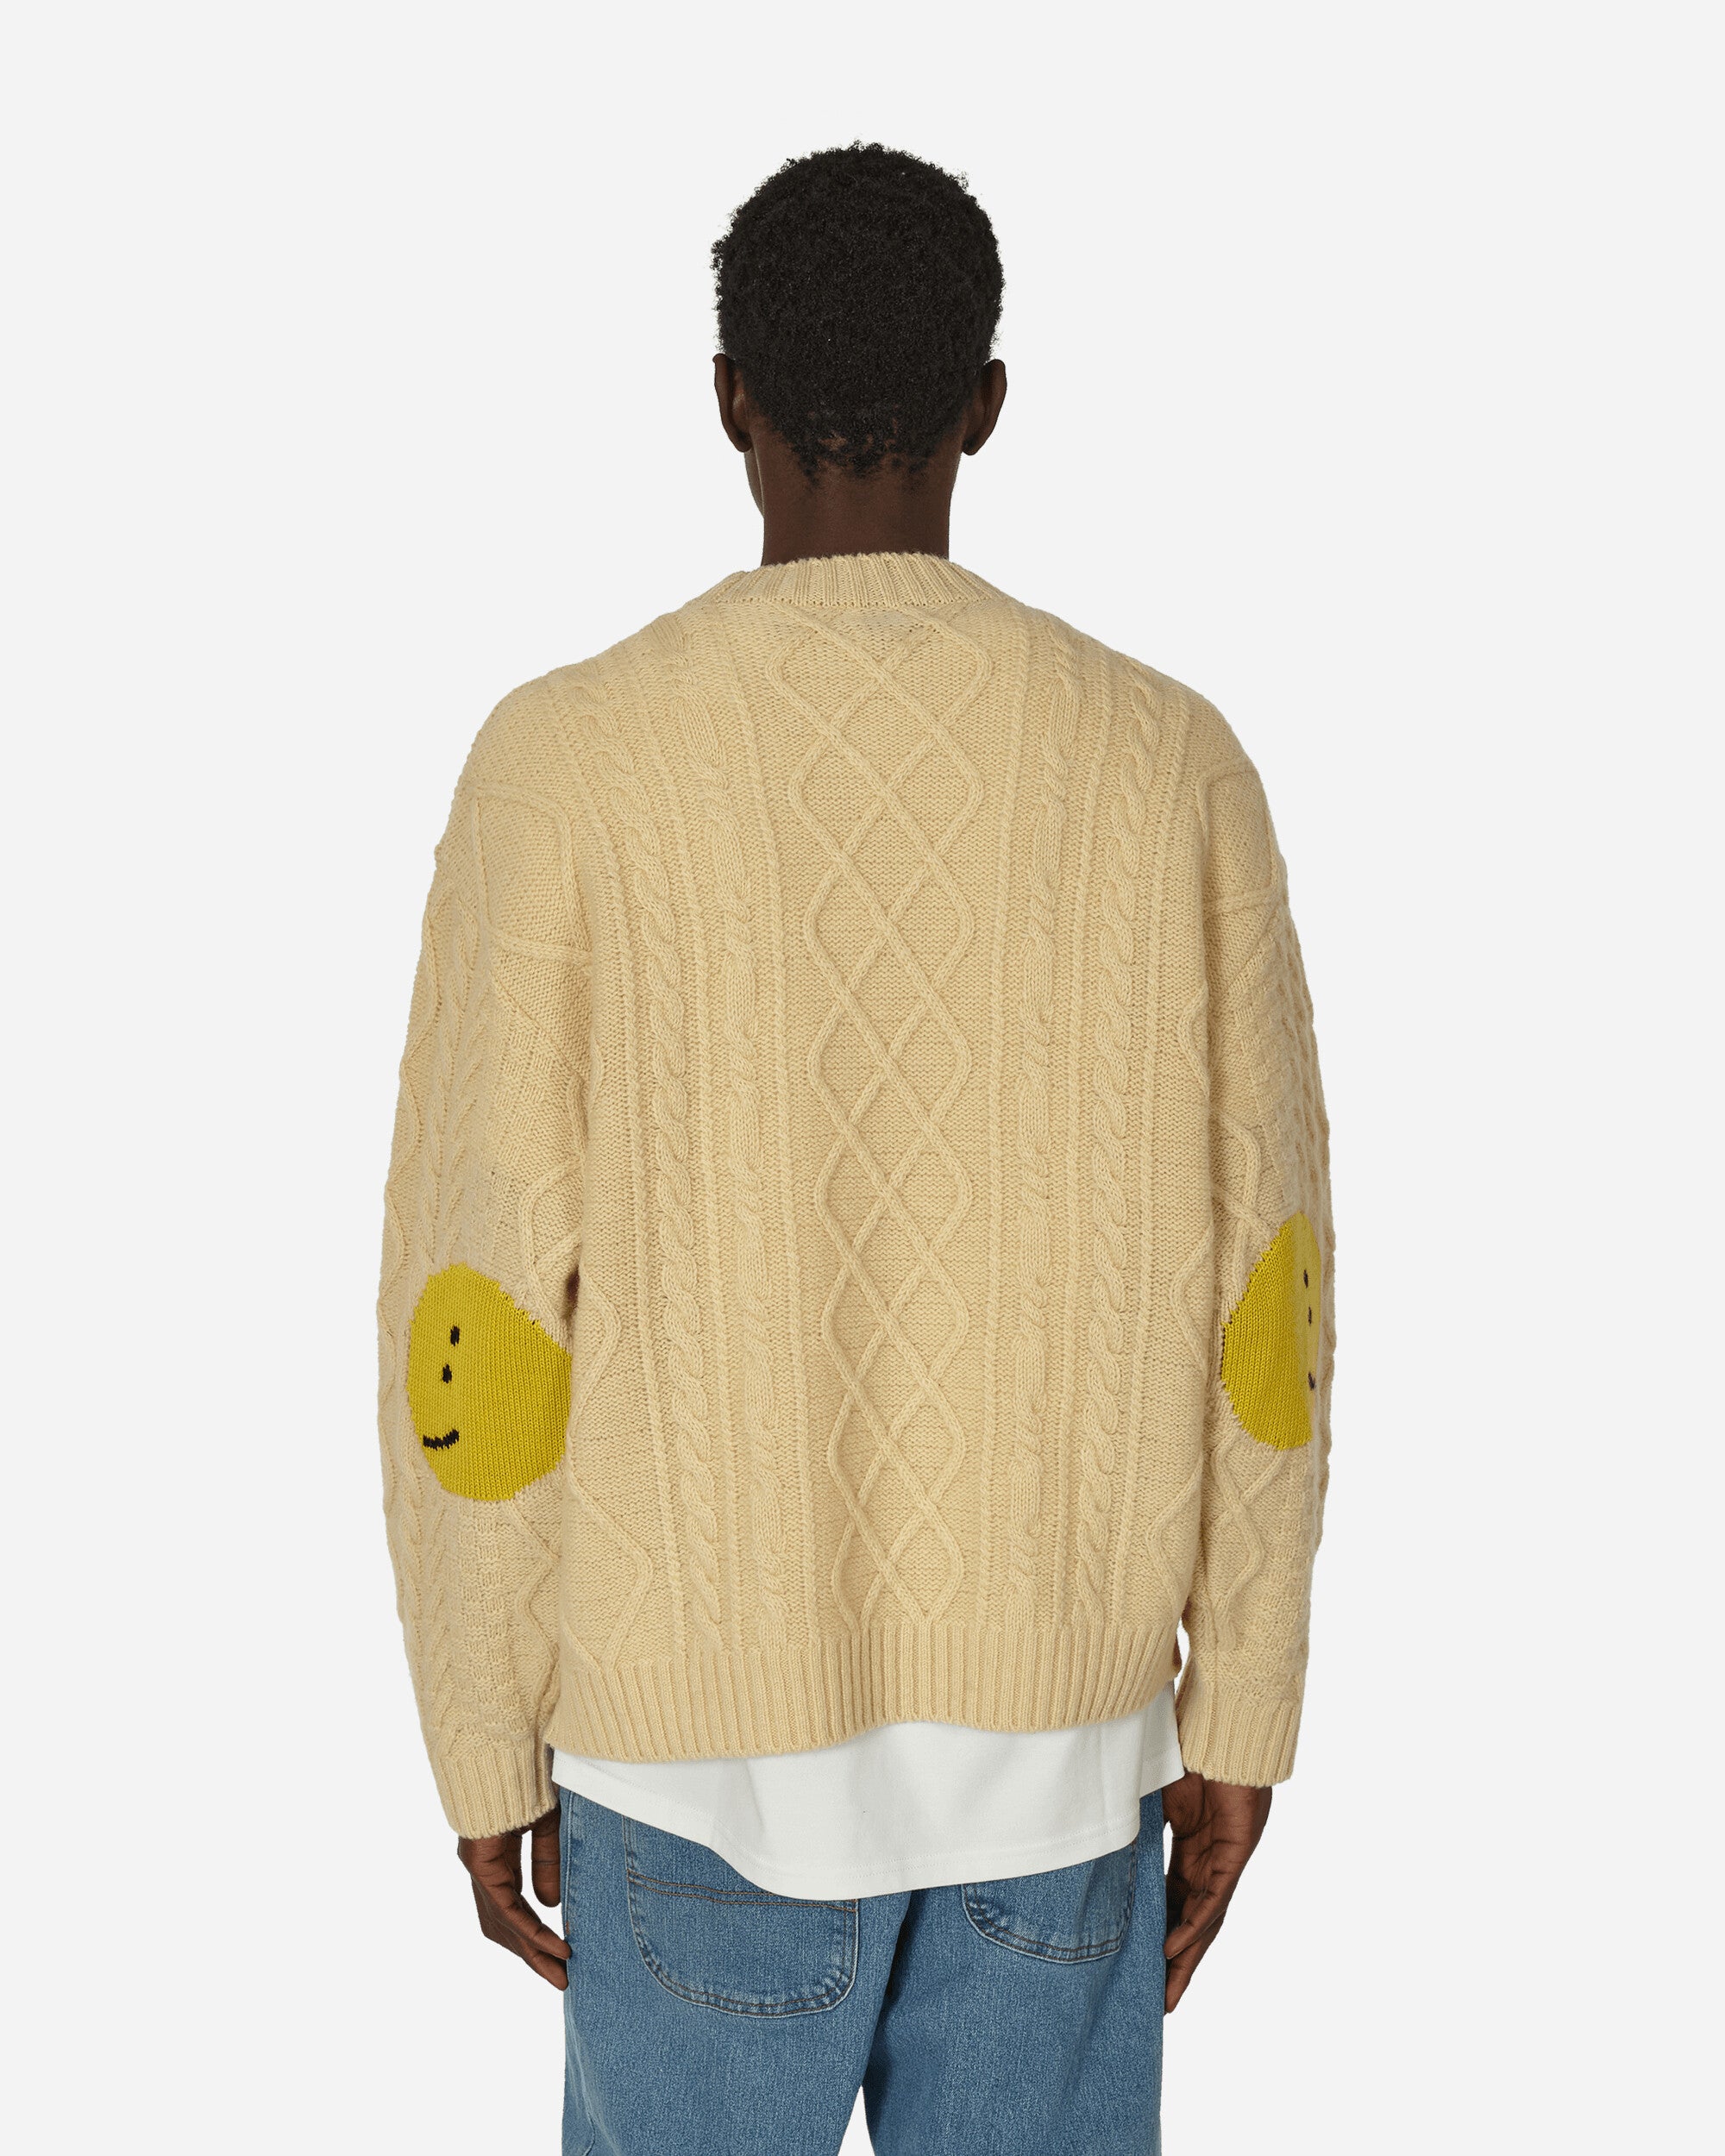 KAPITAL 5G Wool Cable Knit Profile Rainbowy Patch Sweater Ecru Knitwears Sweaters EK-1517 1